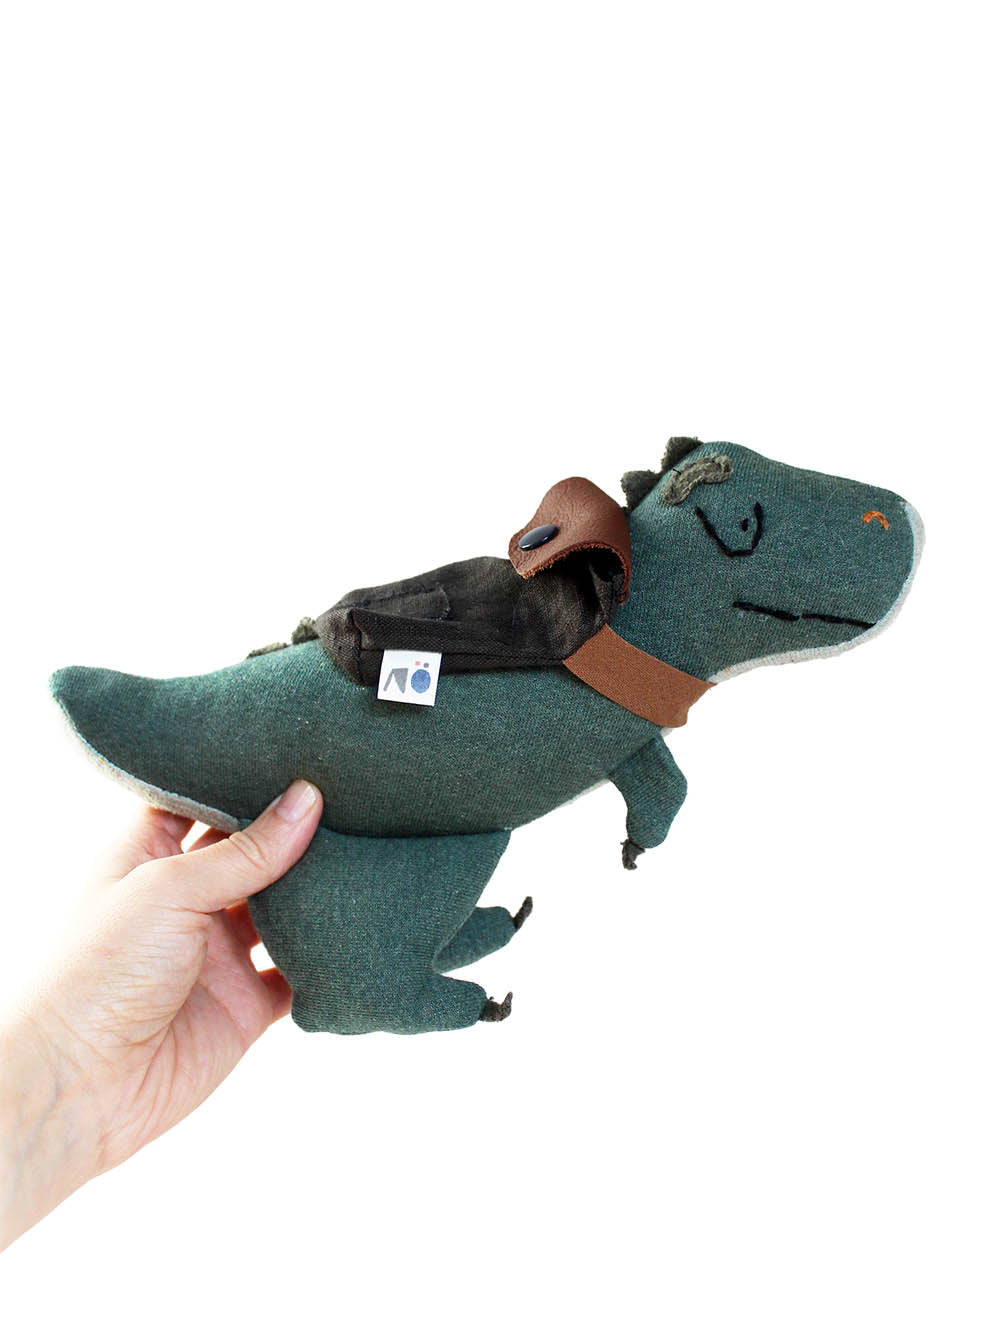 Kuscheltier T-Rex in grün mit Rucksack auf dem Rücken und einem Stoffetikett Nö daran